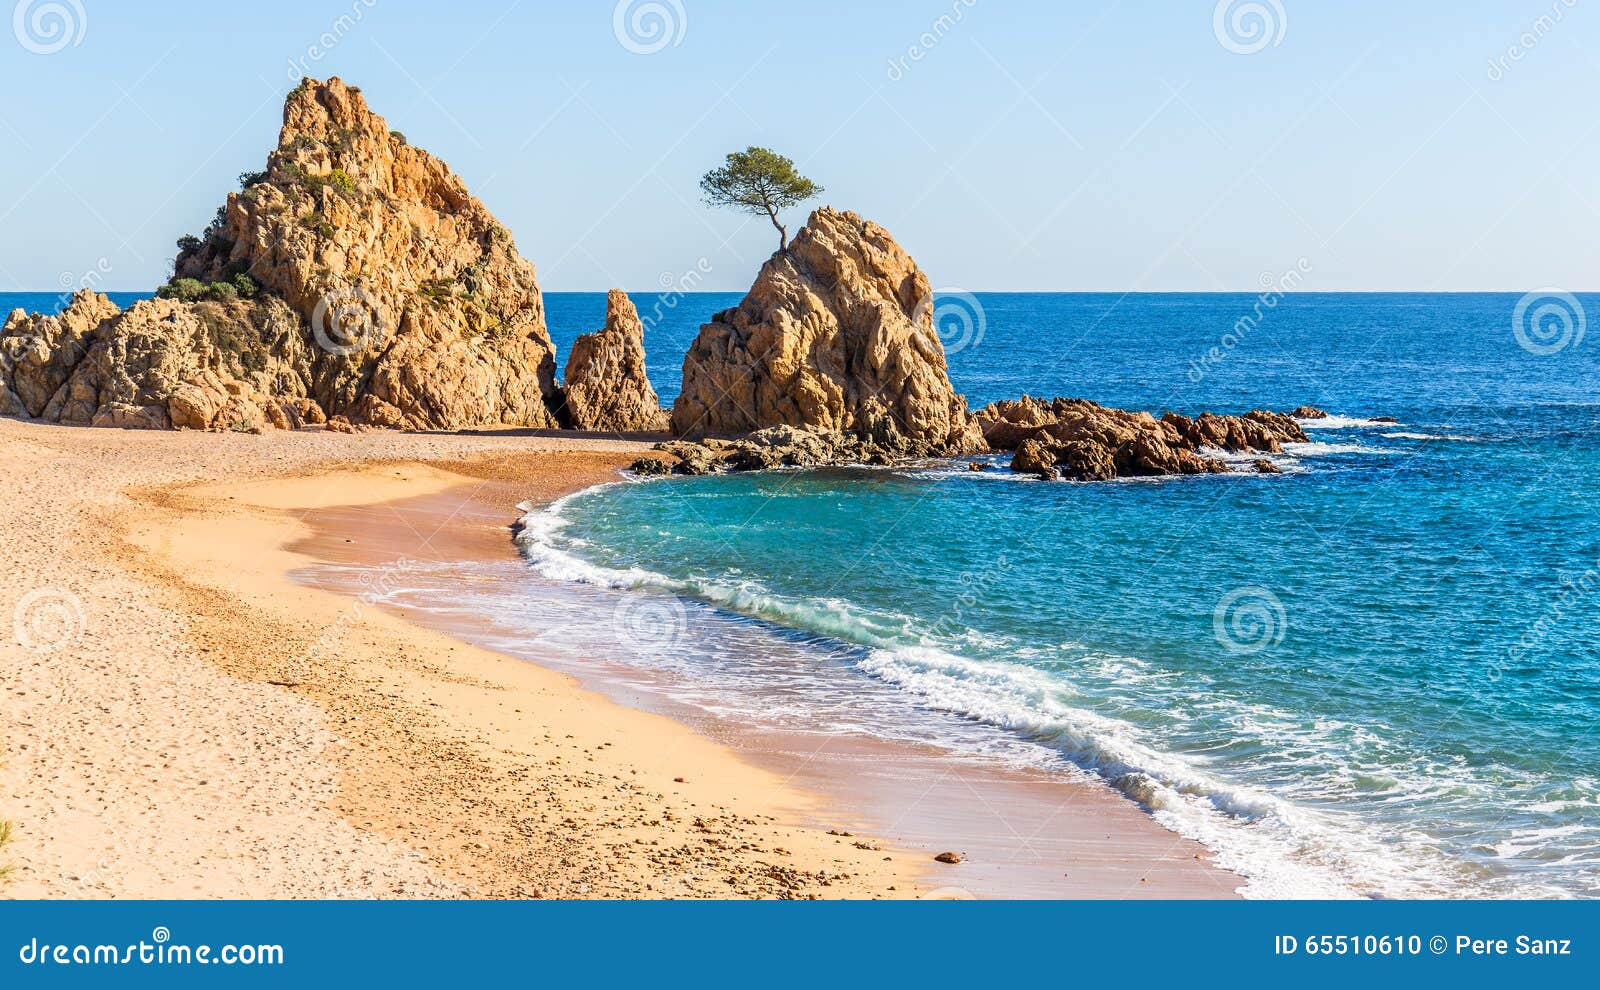 beach in tossa de mar, costa brava, catalonia